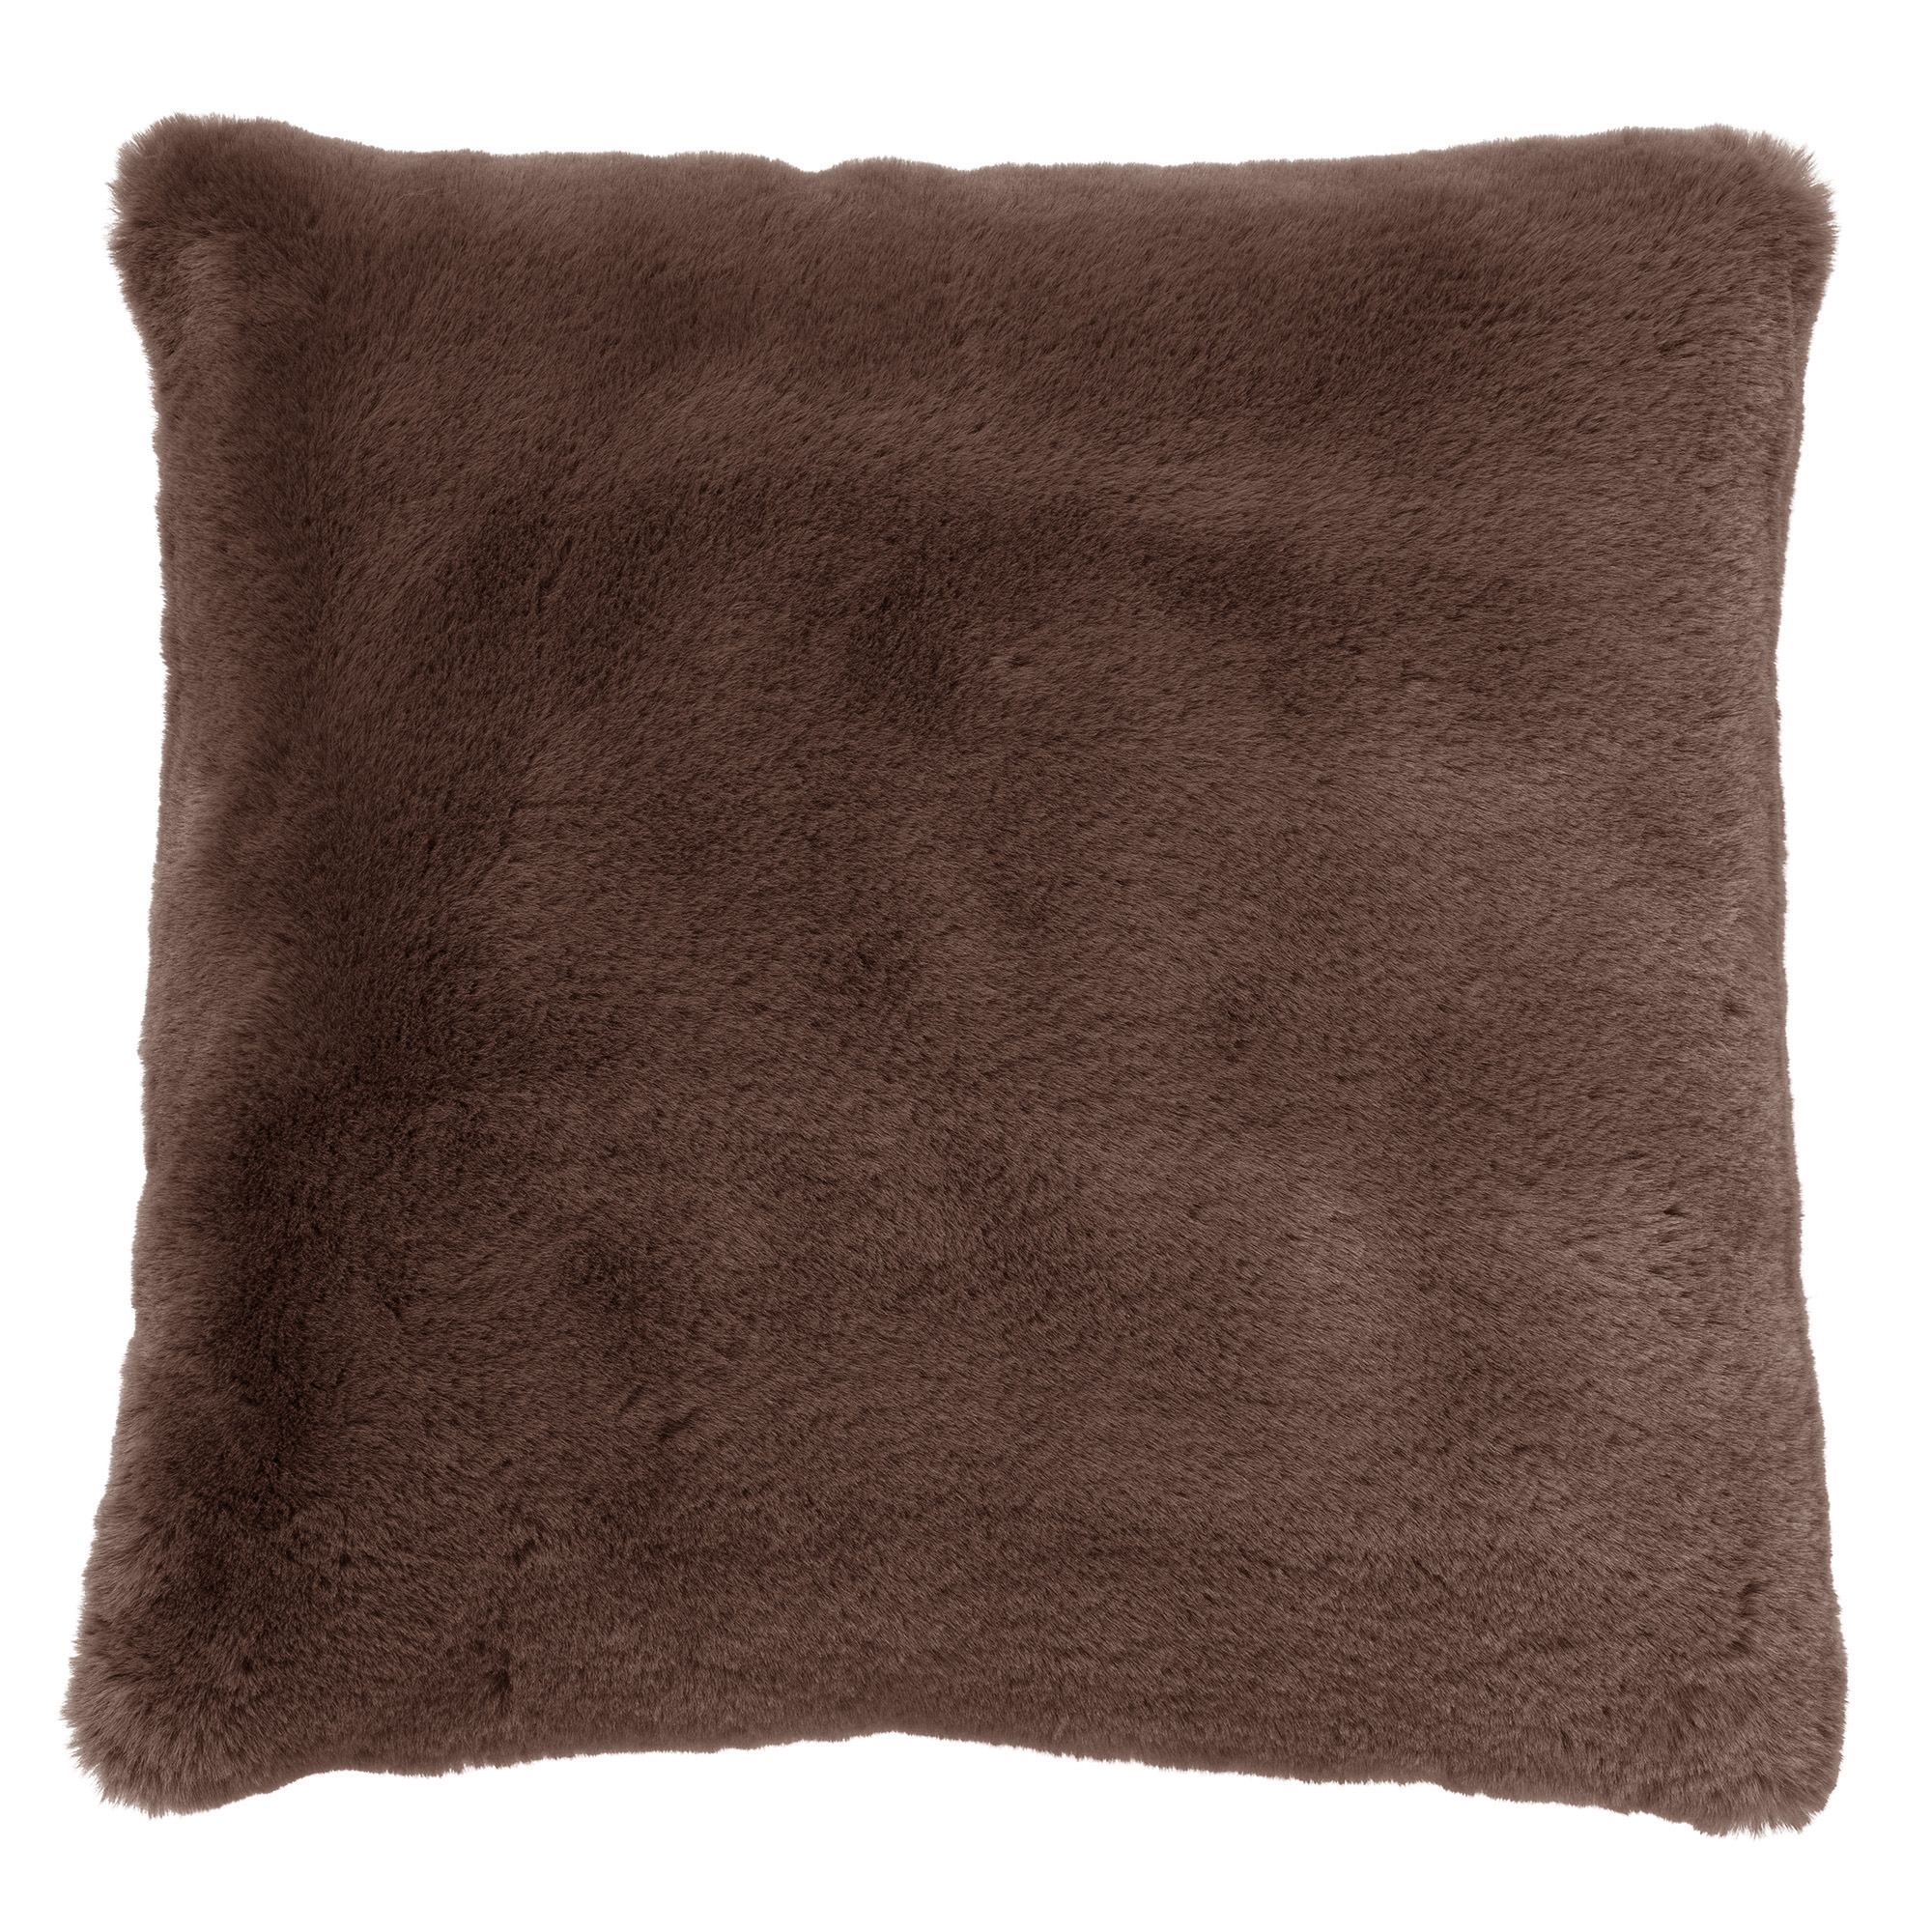 ZAYA - Cushion 45x45 cm - Chocolate Martini - brown